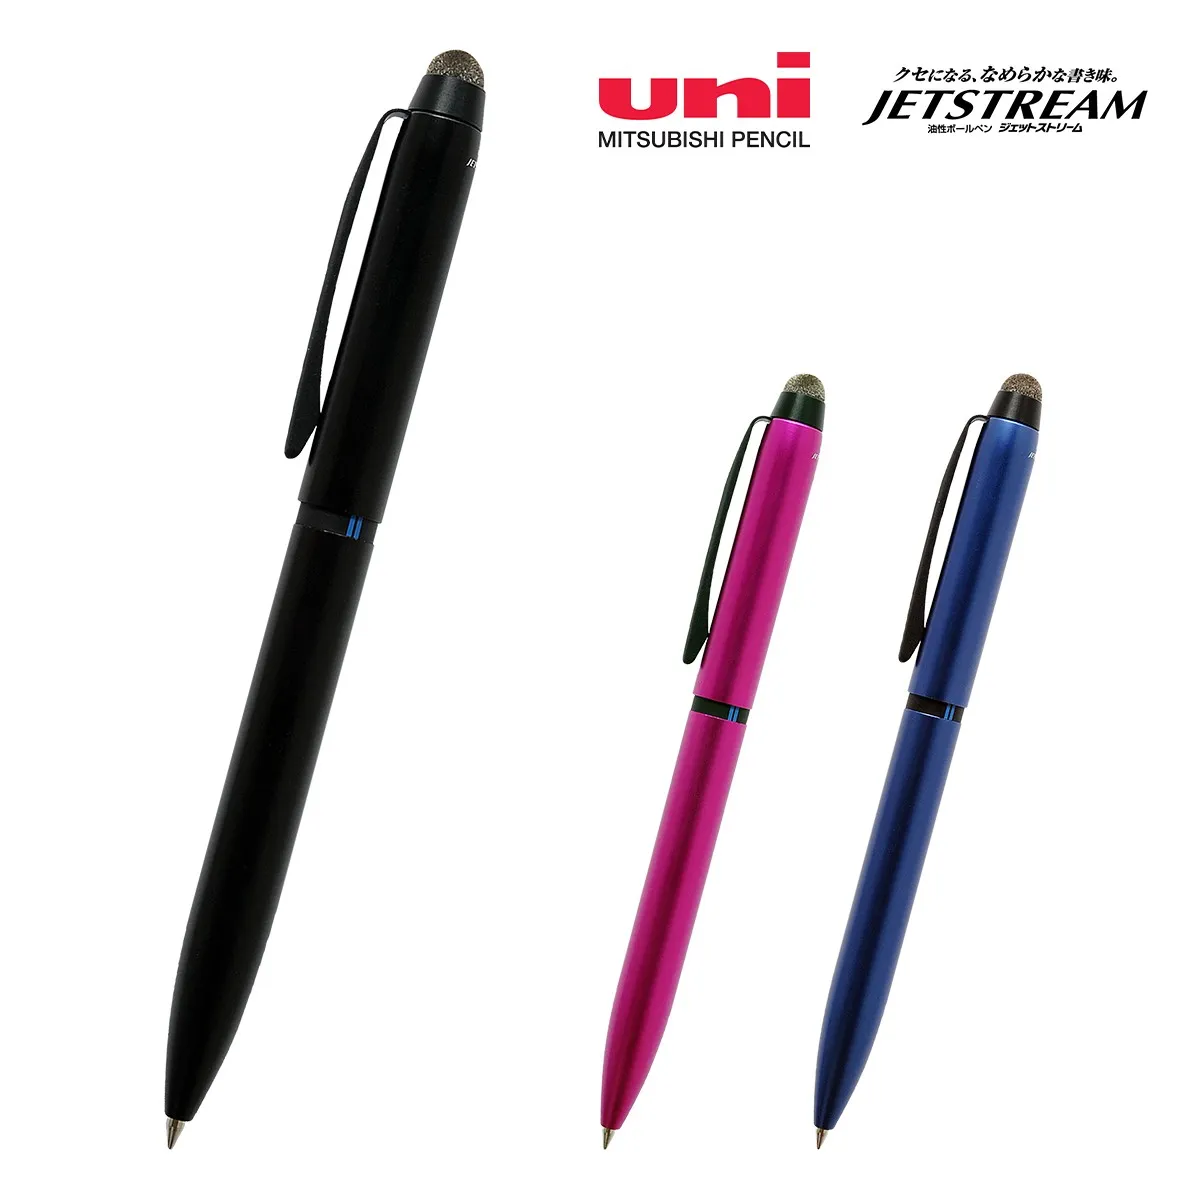 【短納期】三菱鉛筆 ジェットストリーム スタイラス 3色ボールペン 0.5mm【多機能ペン / レーザー彫刻】 画像1